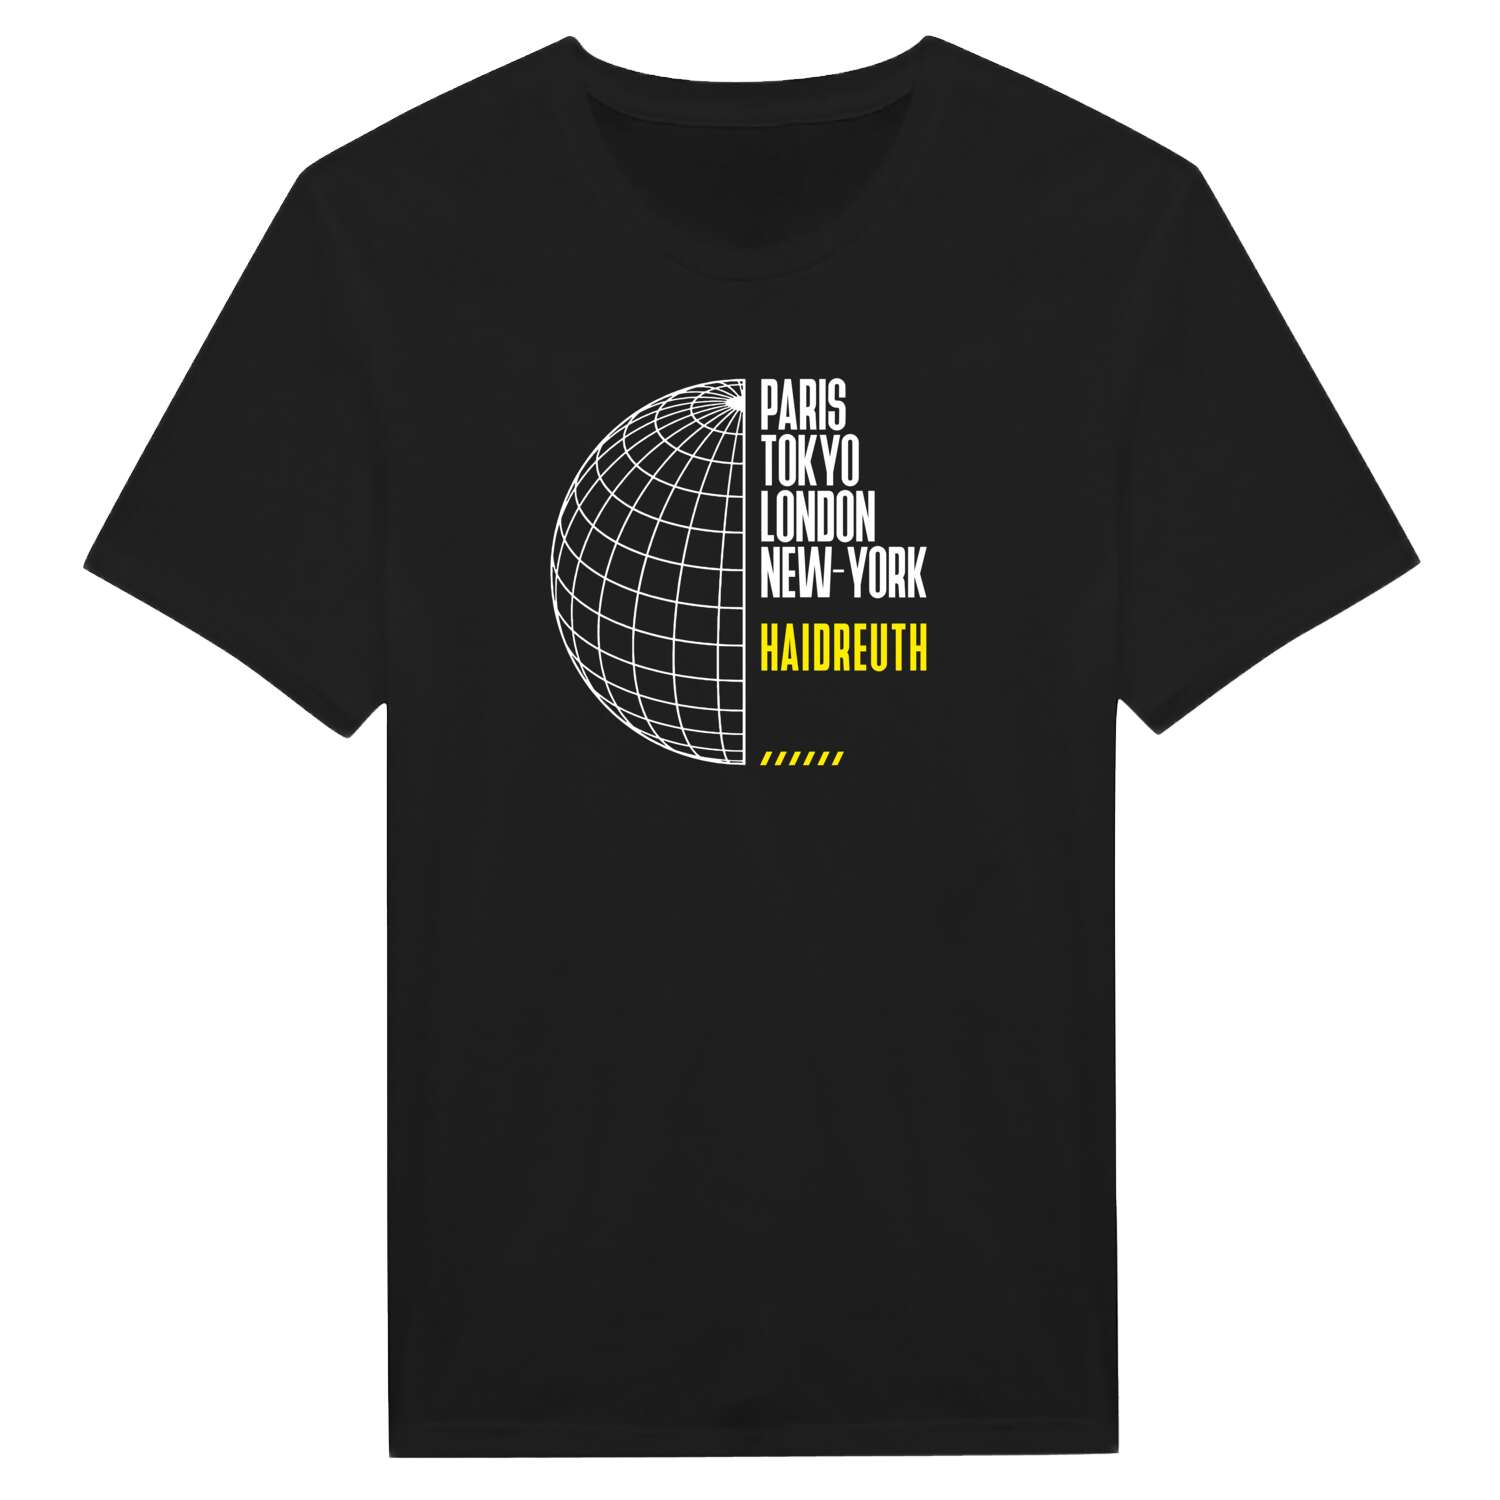 Haidreuth T-Shirt »Paris Tokyo London«